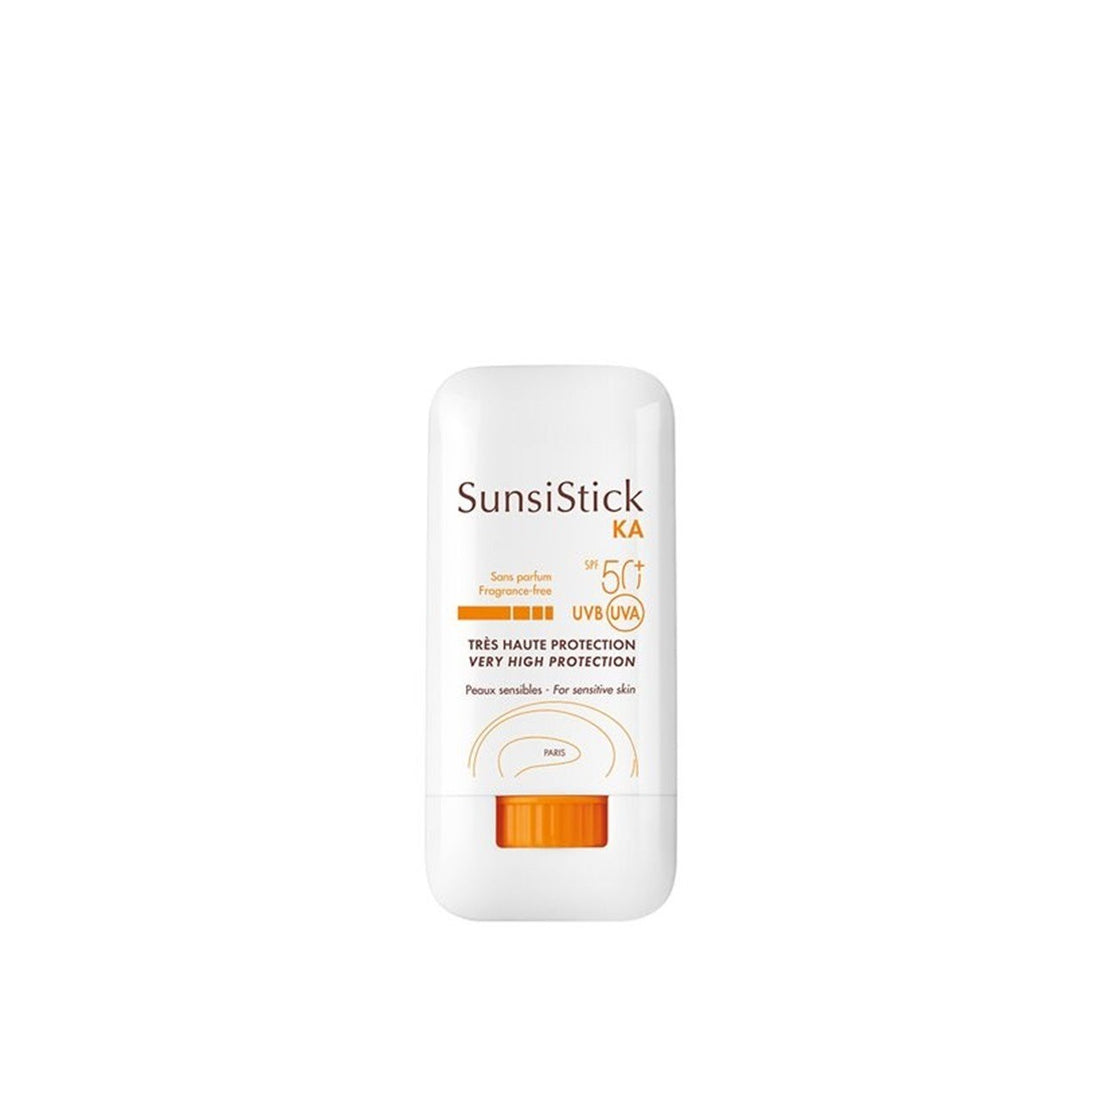 Avène Sunscreen SunsiStick KA SPF50+ Actinic Keratosis 20G